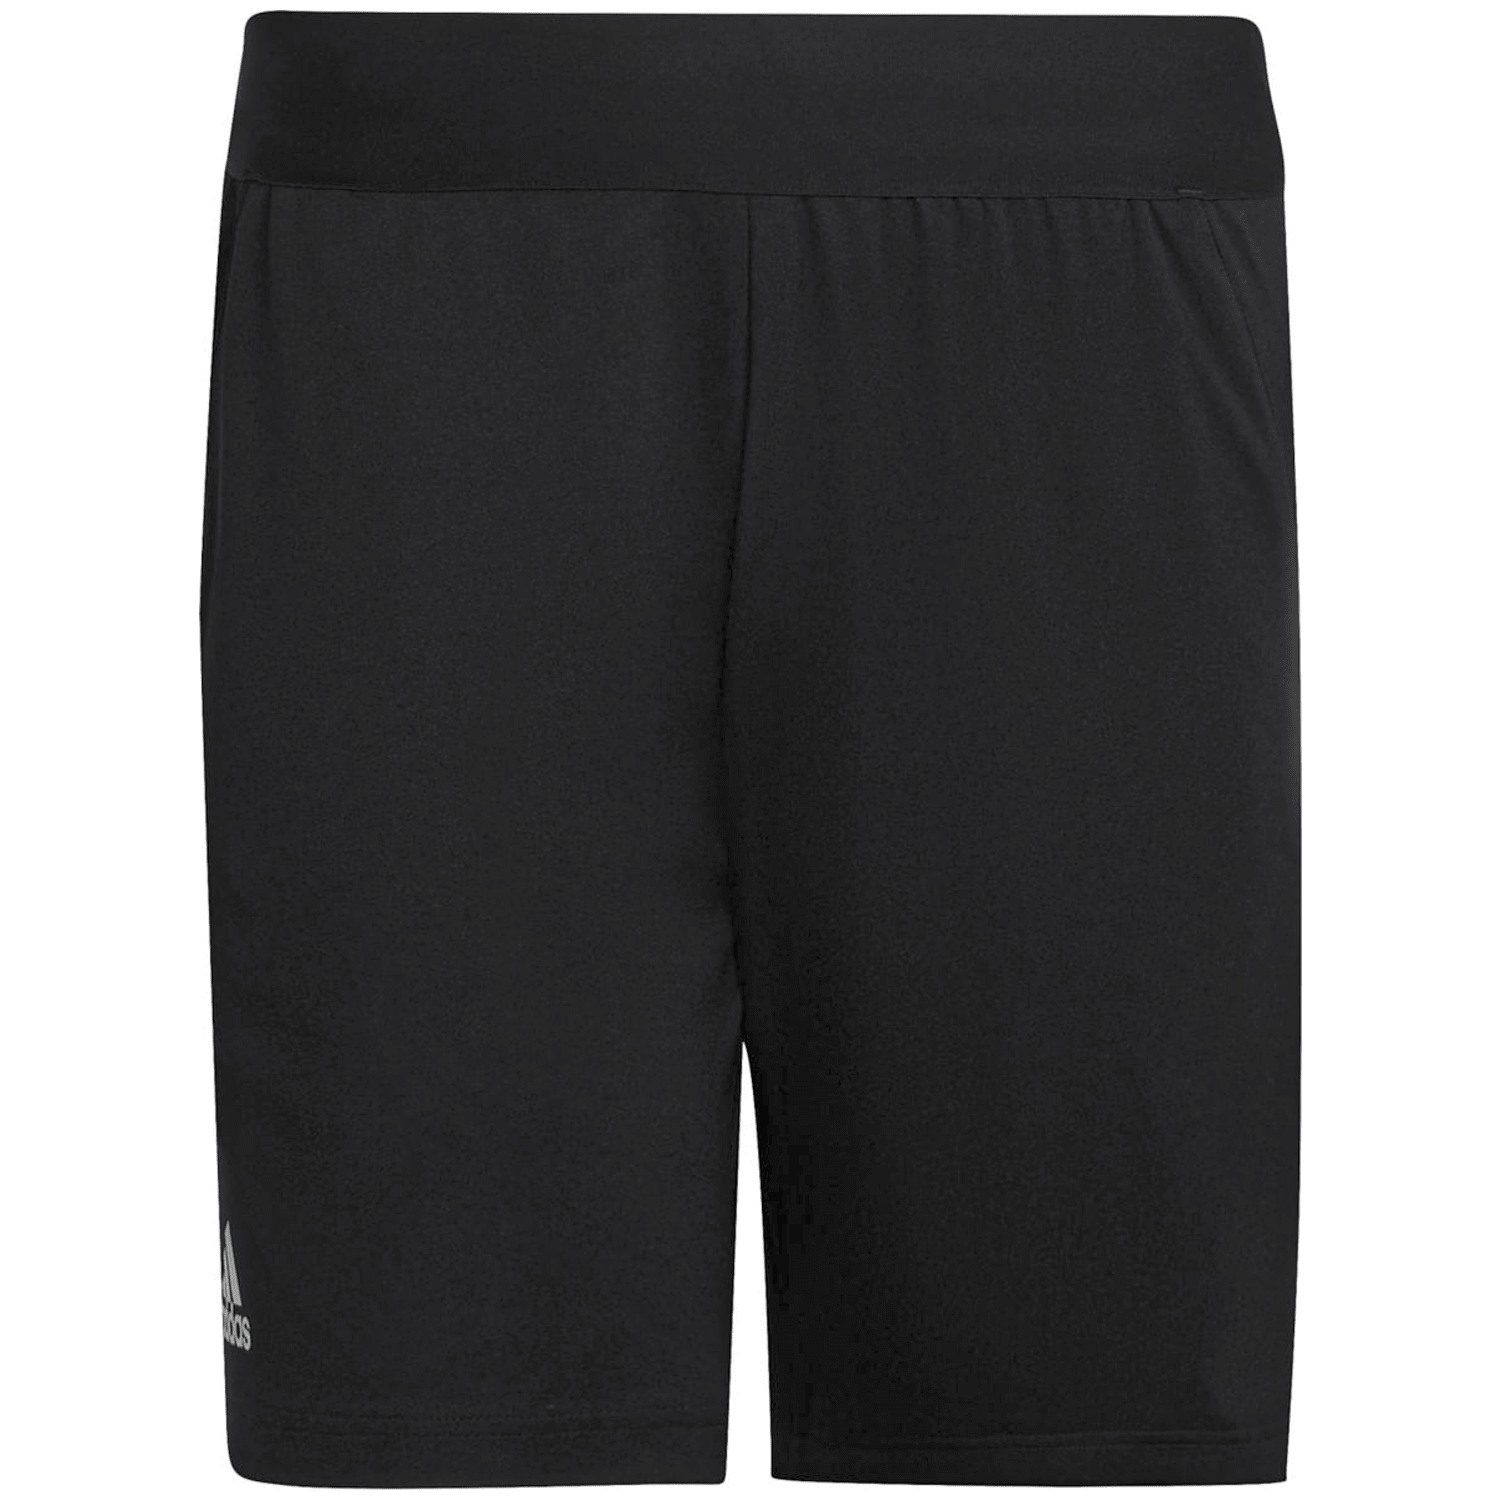 Adidas Schiedsrichter-Shorts 22 Herren